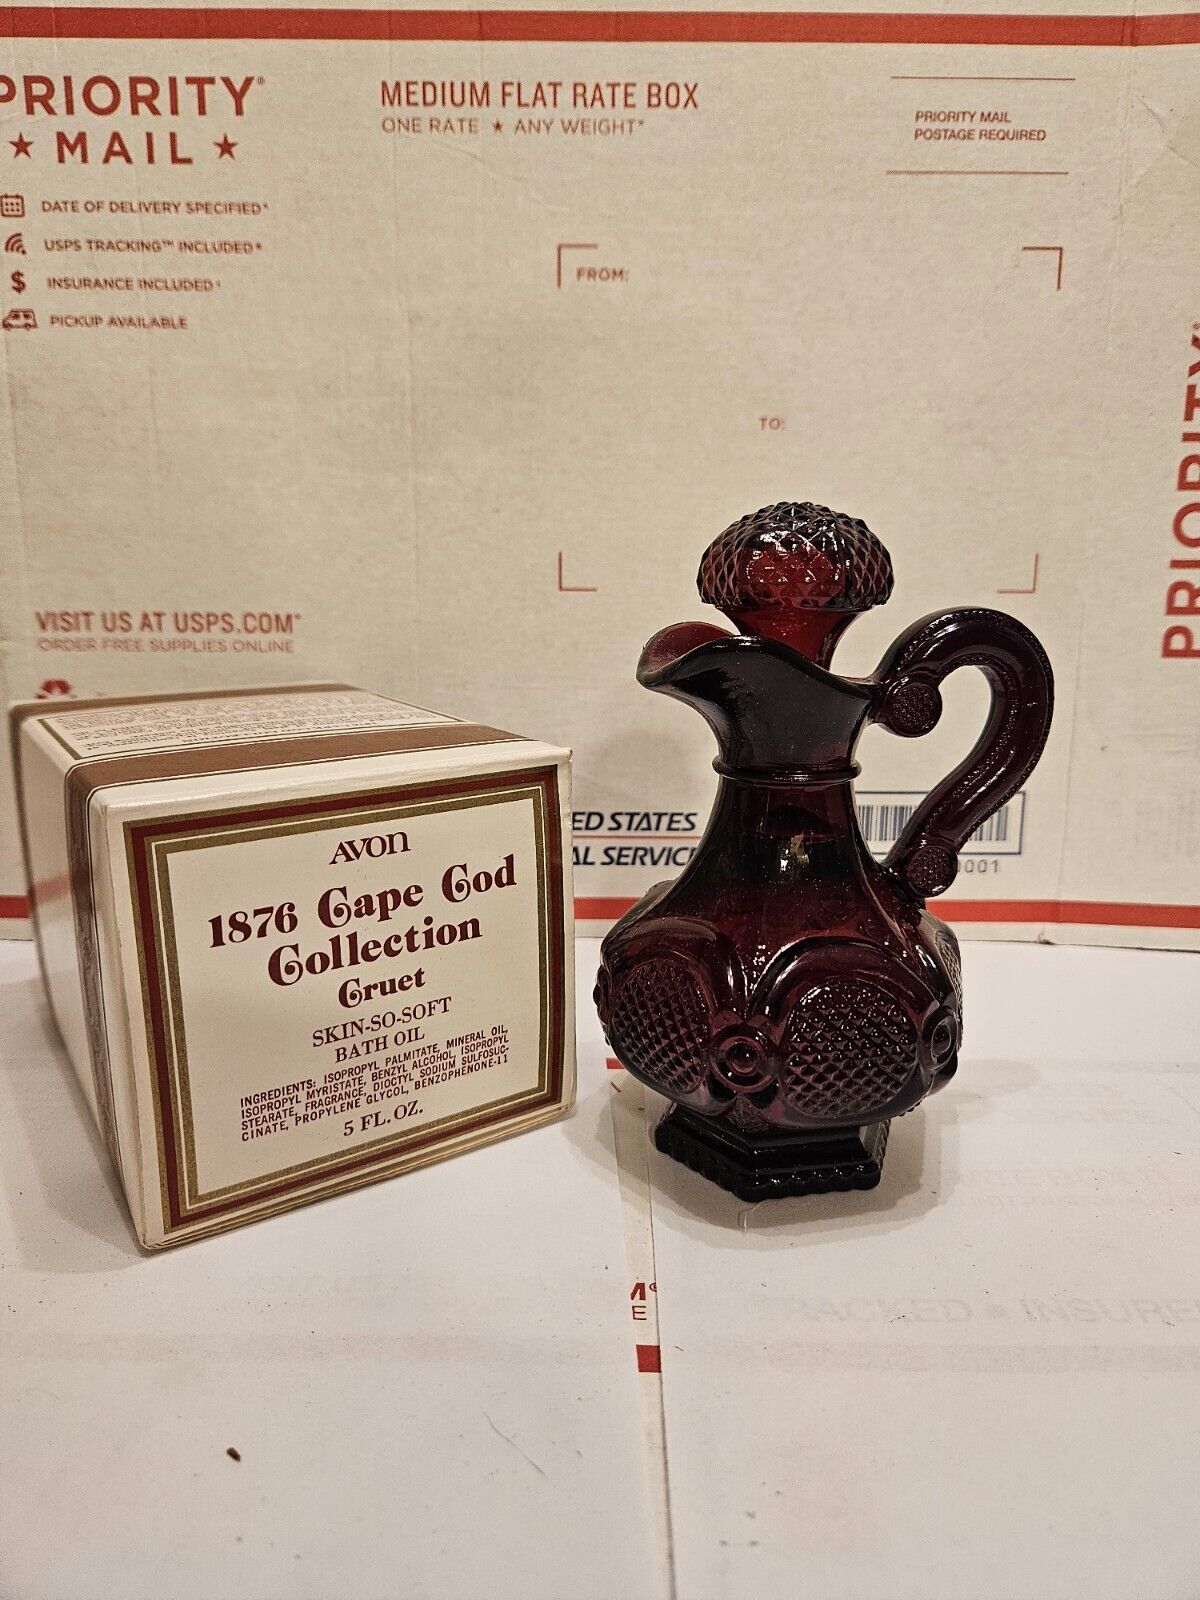 Avon 1876 Cape Cod Collection Ruby Red Glass Cruet New In Box Decor